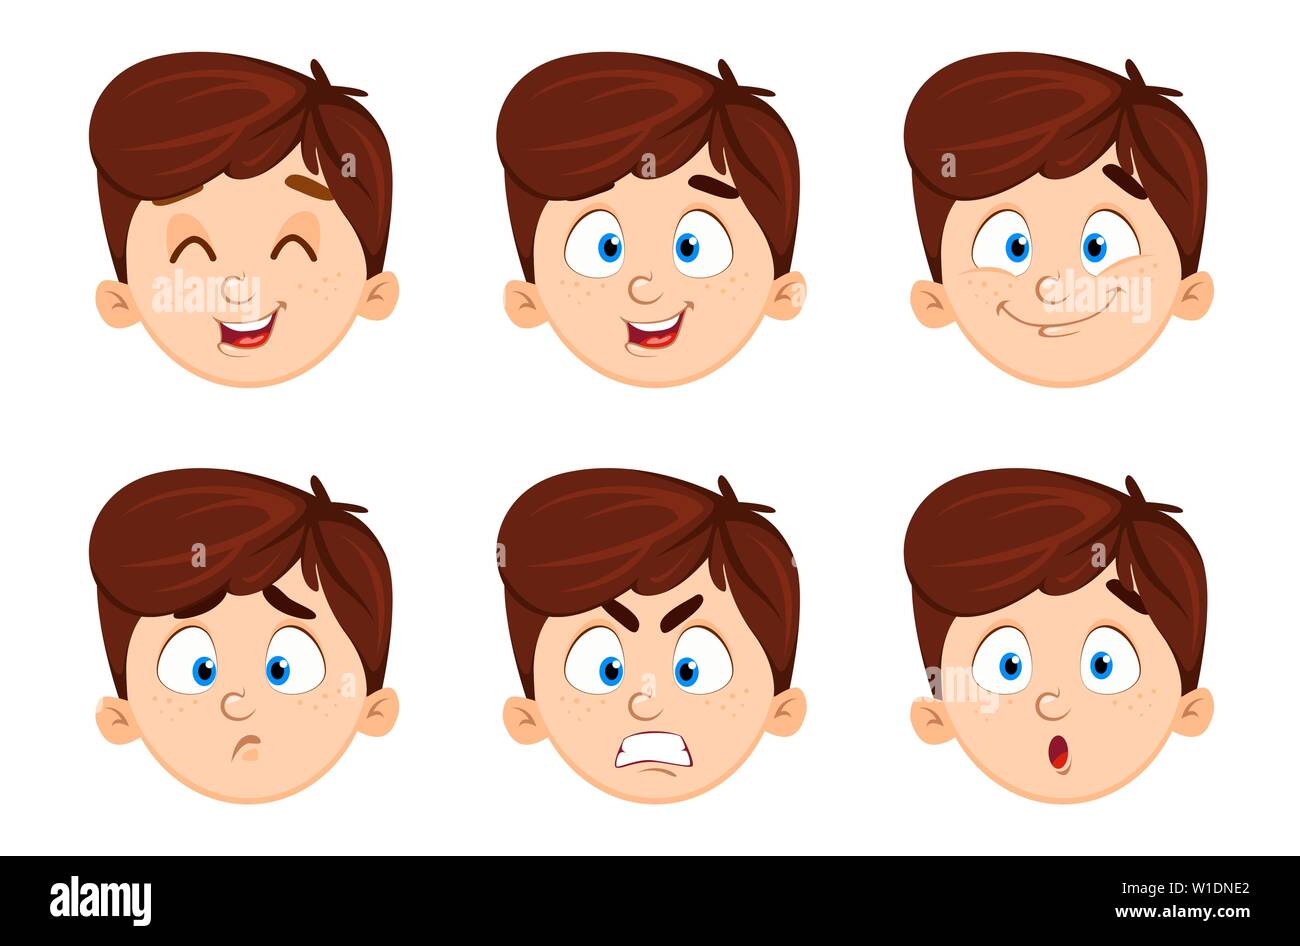 Gesichtsausdruck von süßen Jungen. Satz von sechs Emotionen eines Kindes. Vector Illustration auf weißem Hintergrund Stock Vektor